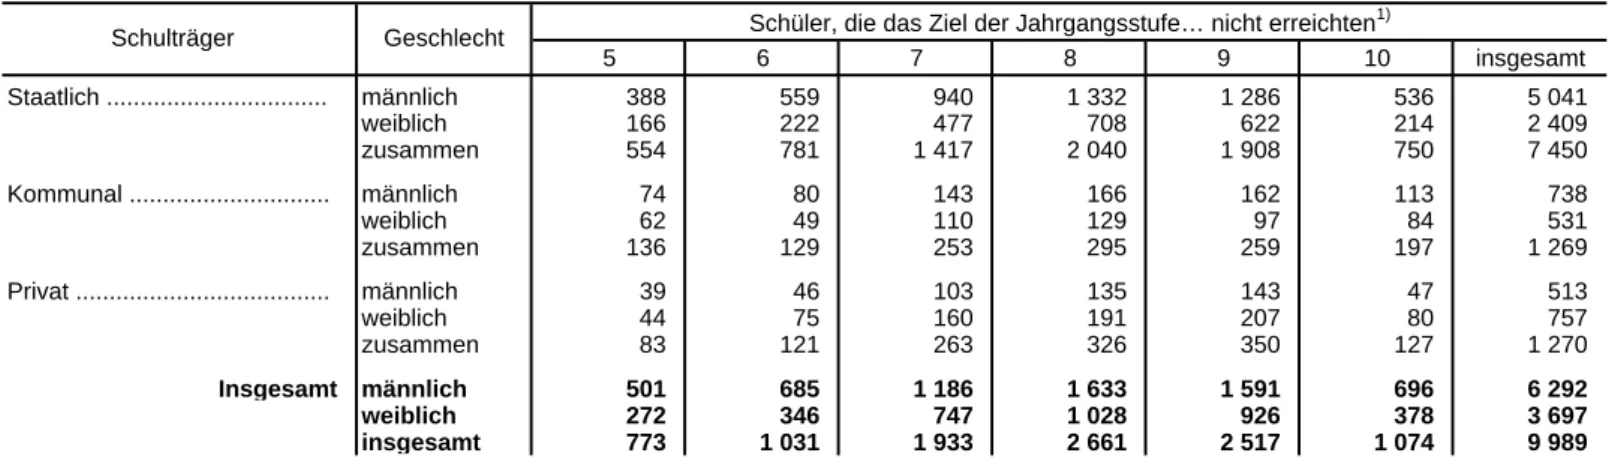 Tabelle 7. Schüler an den Realschulen in Bayern, die am Ende des Schuljahres 2010/11 das Ziel der Jahrgangsstufe nicht erreichten